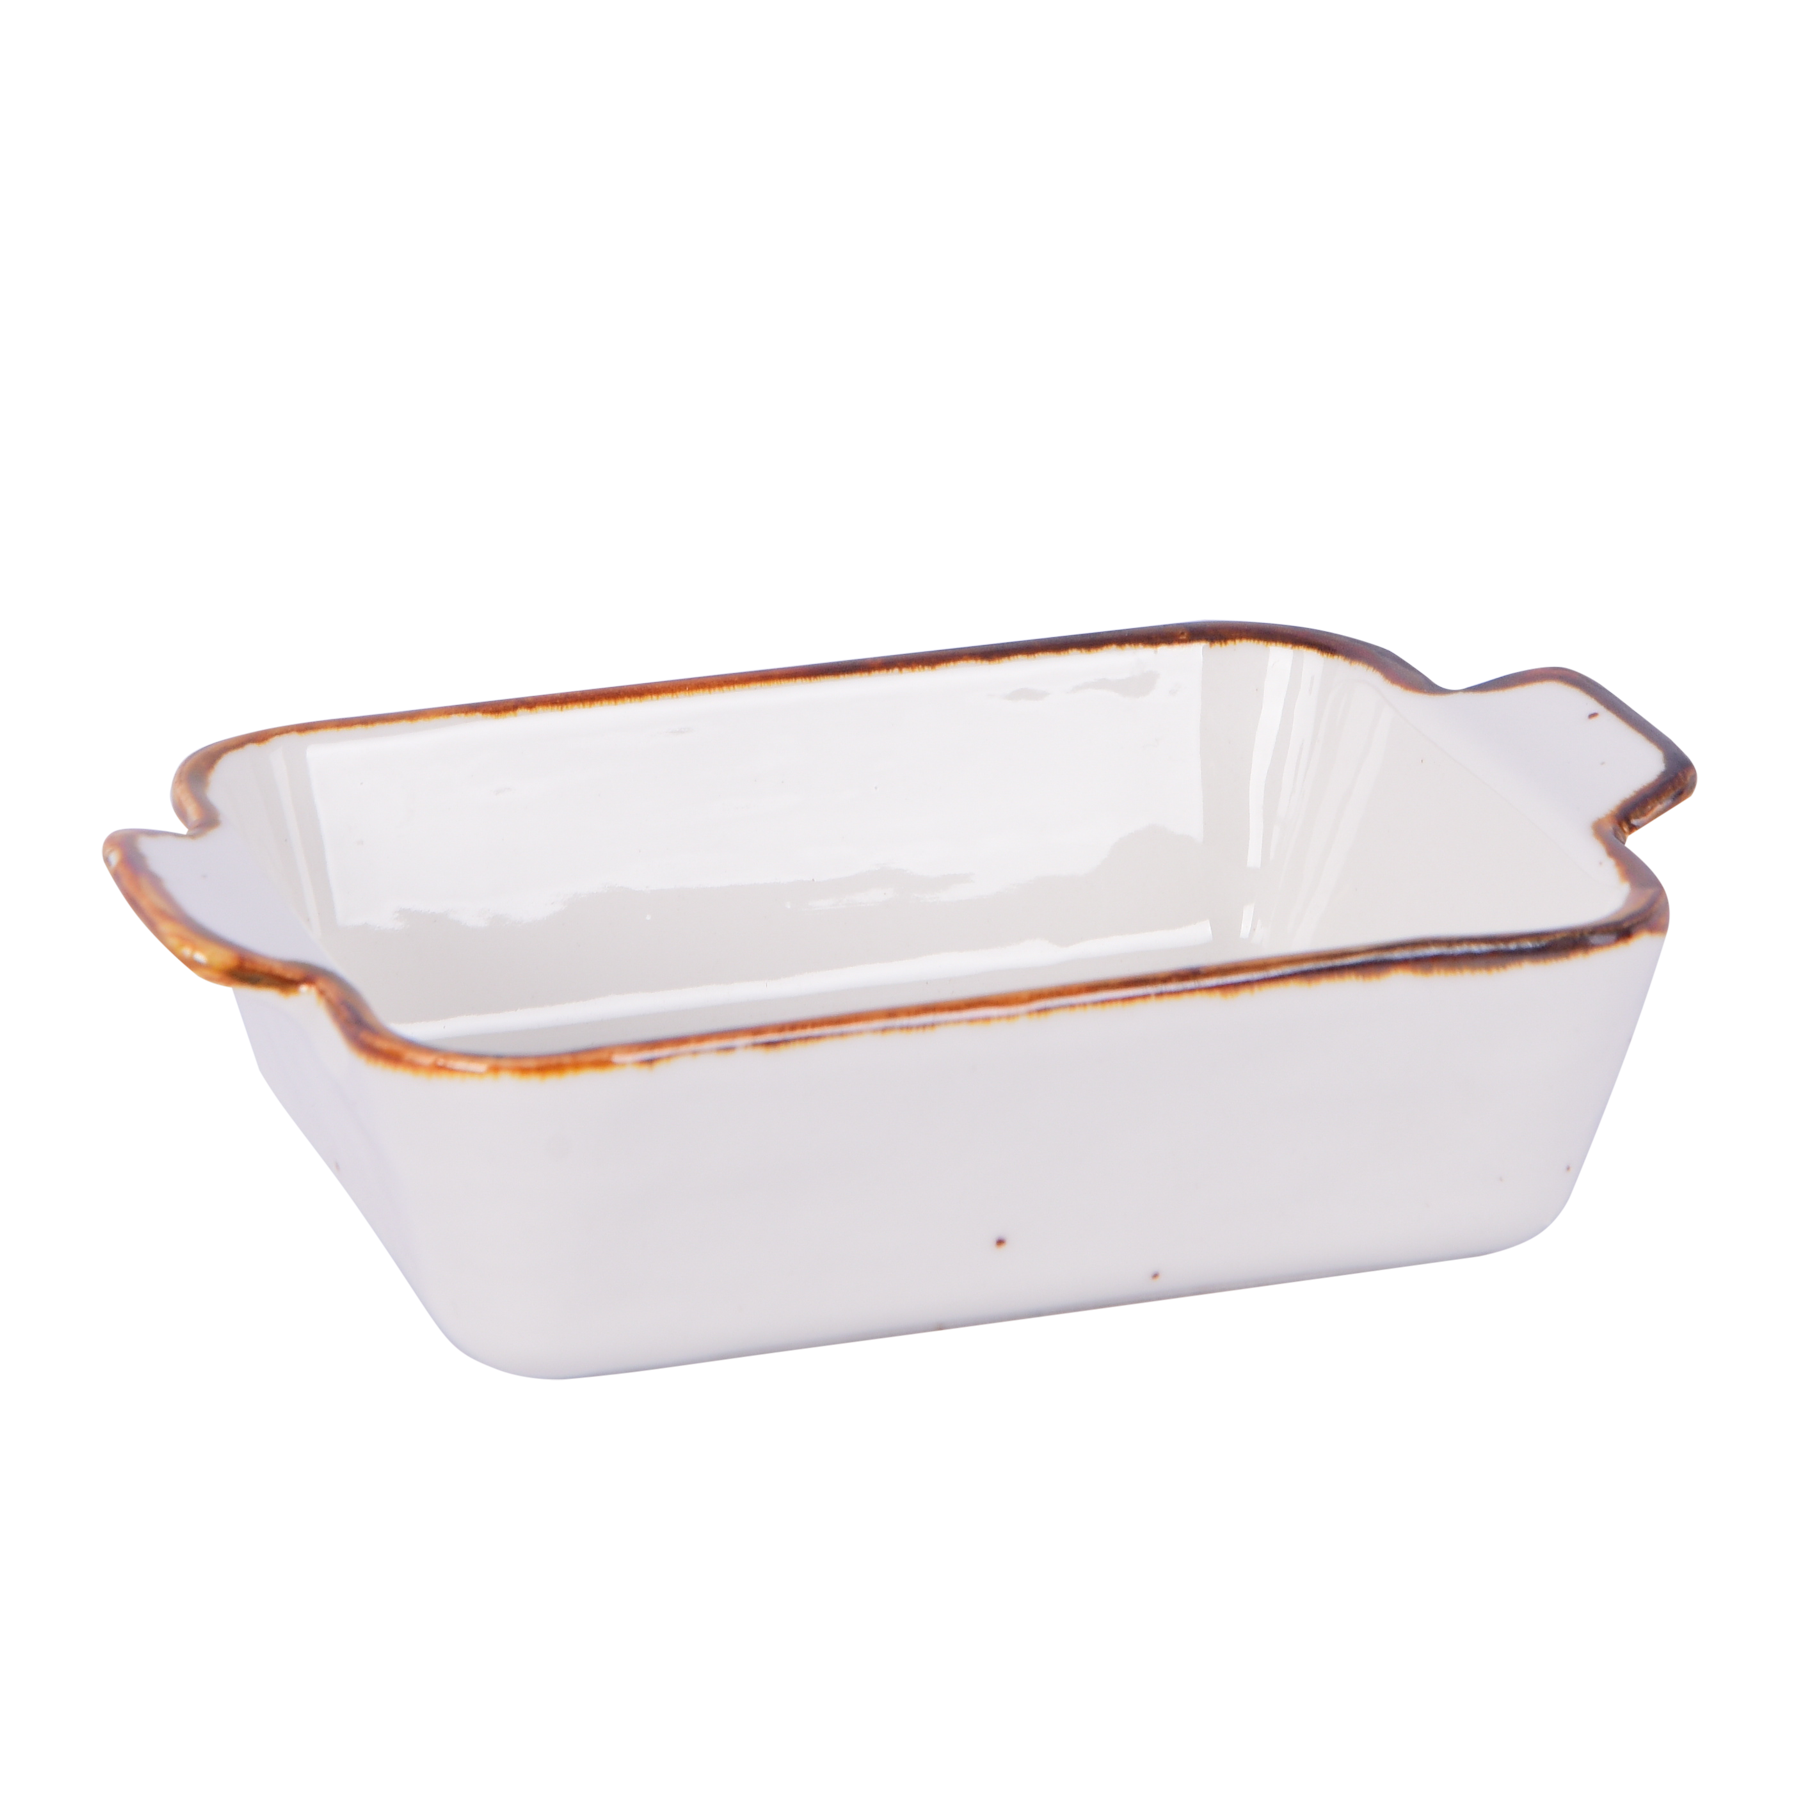 Rectangular dish with handles, White